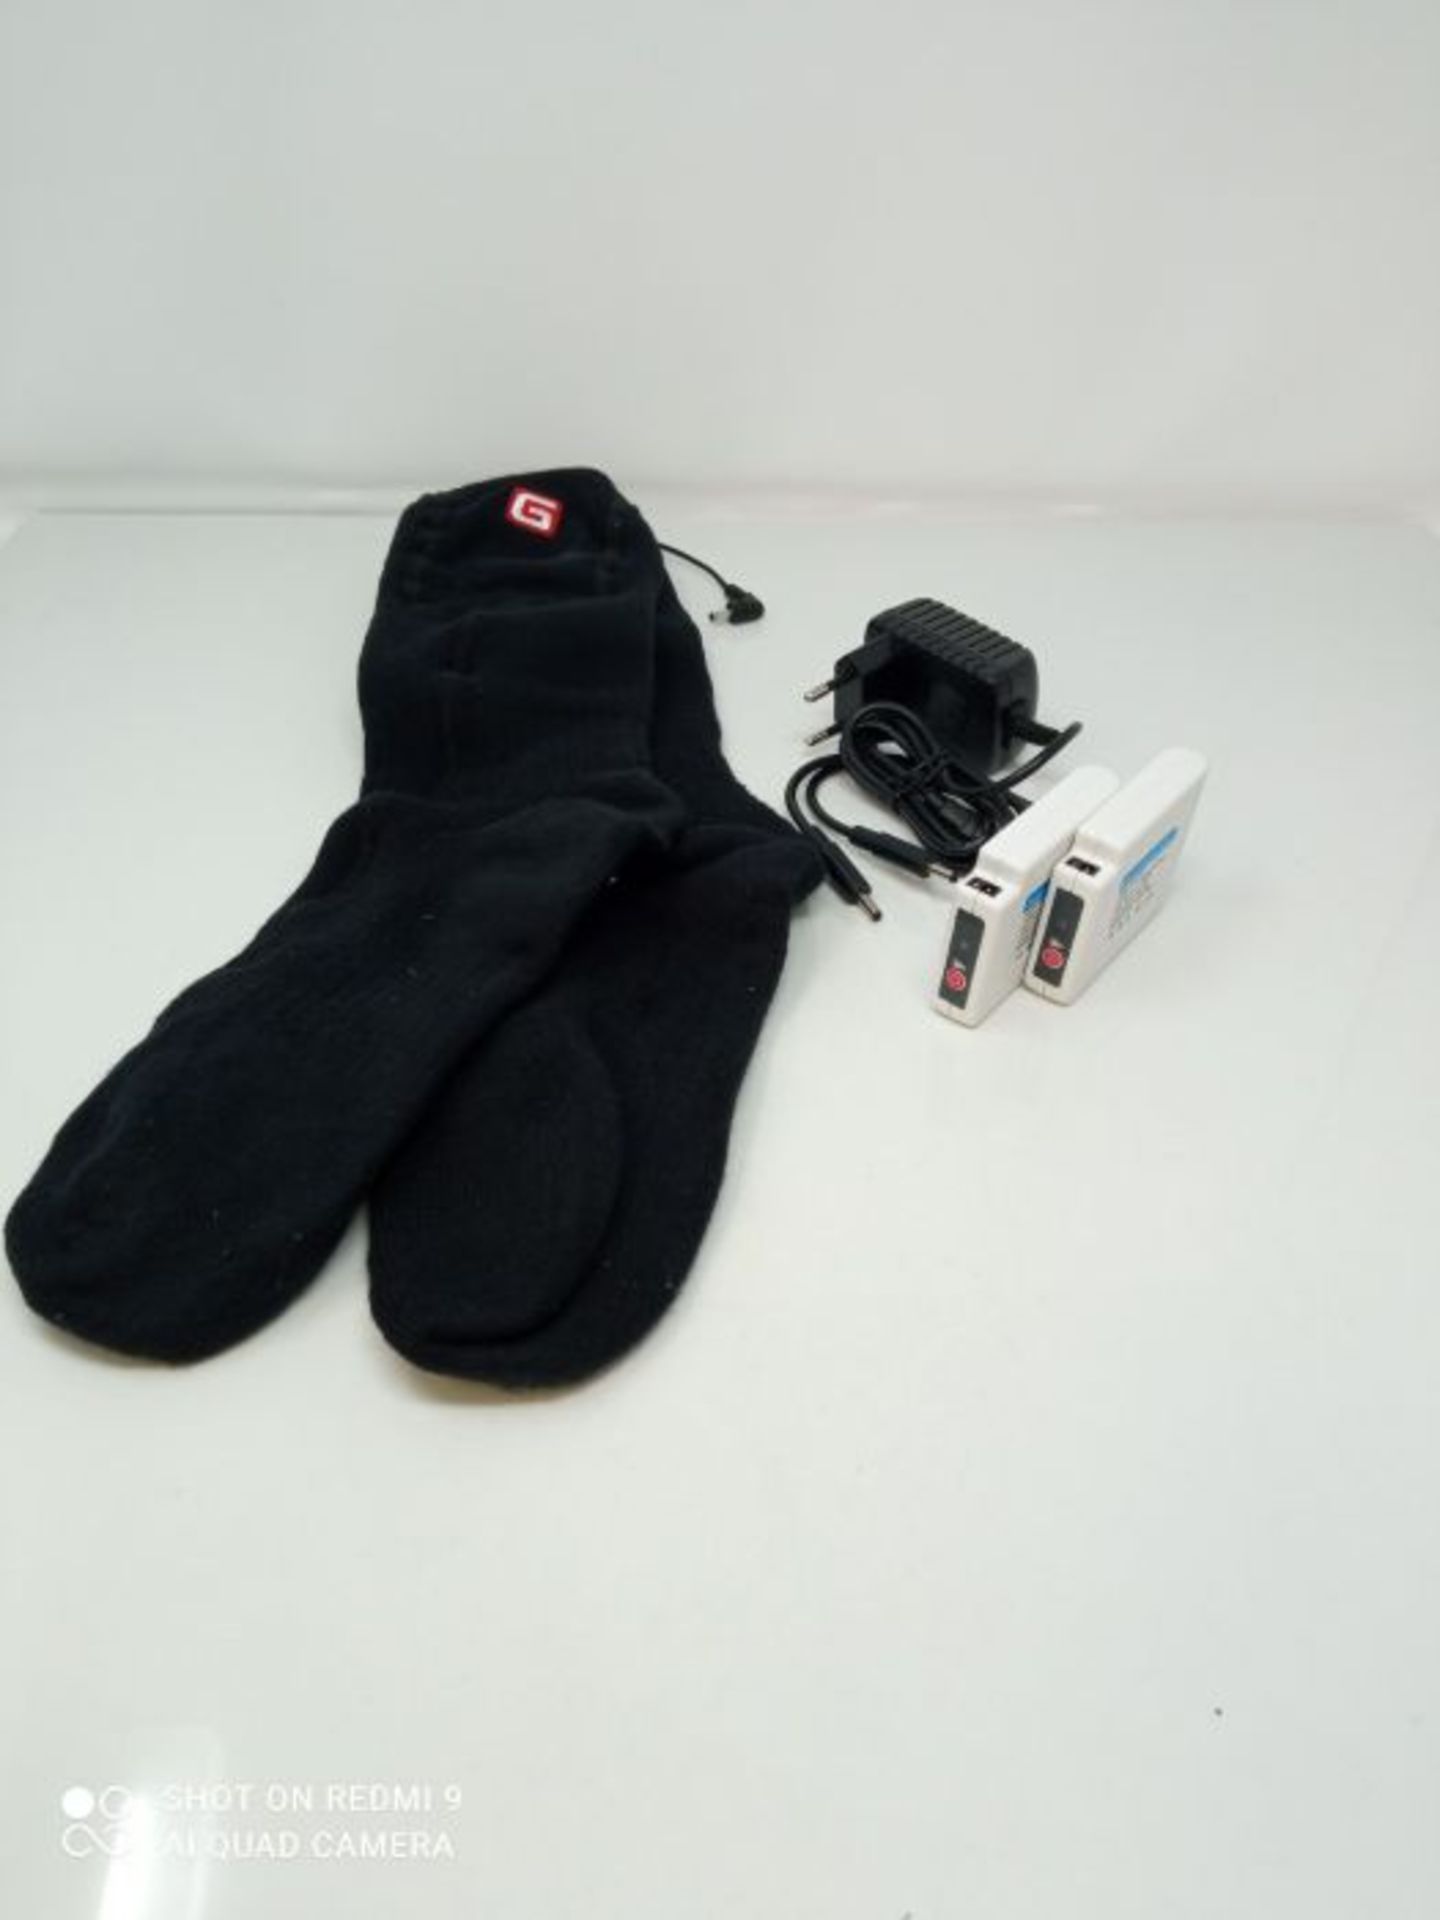 Svpro Batterie beheizte Socken MÃ¤nner Frauen wiederaufladbare elektrische Socken, W - Image 3 of 3